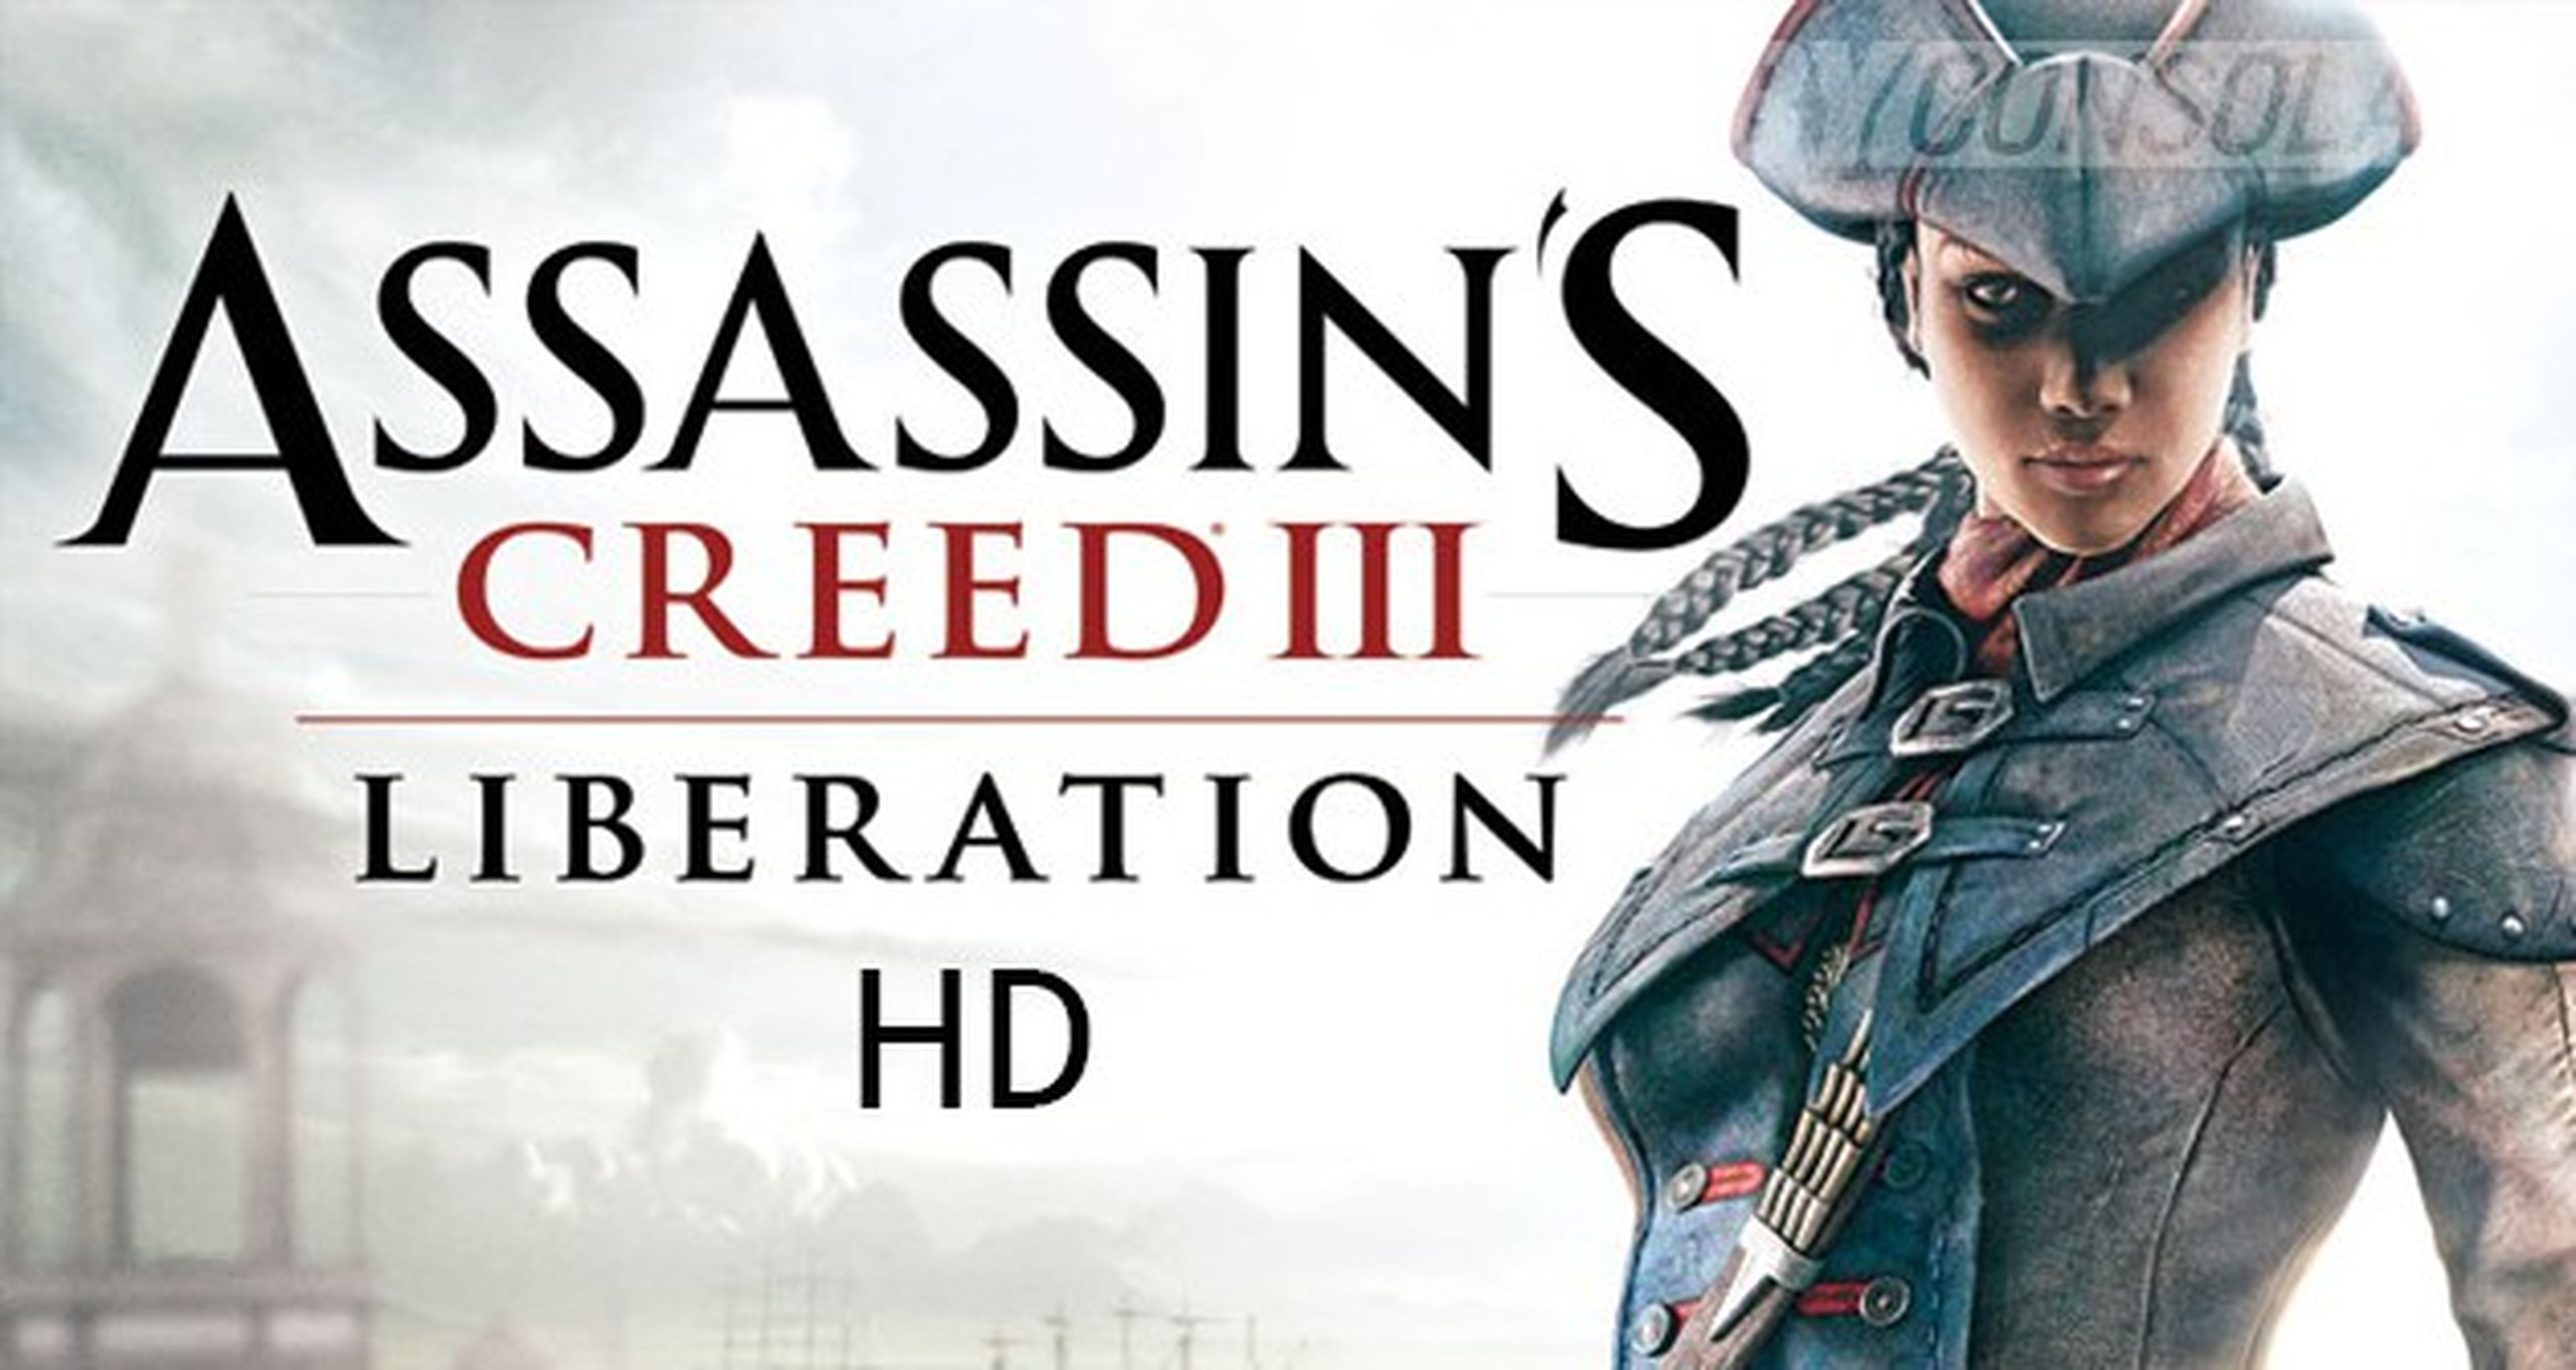 Assassins Creed Liberation Hd Confirmado En Ps3 360 Y Pc